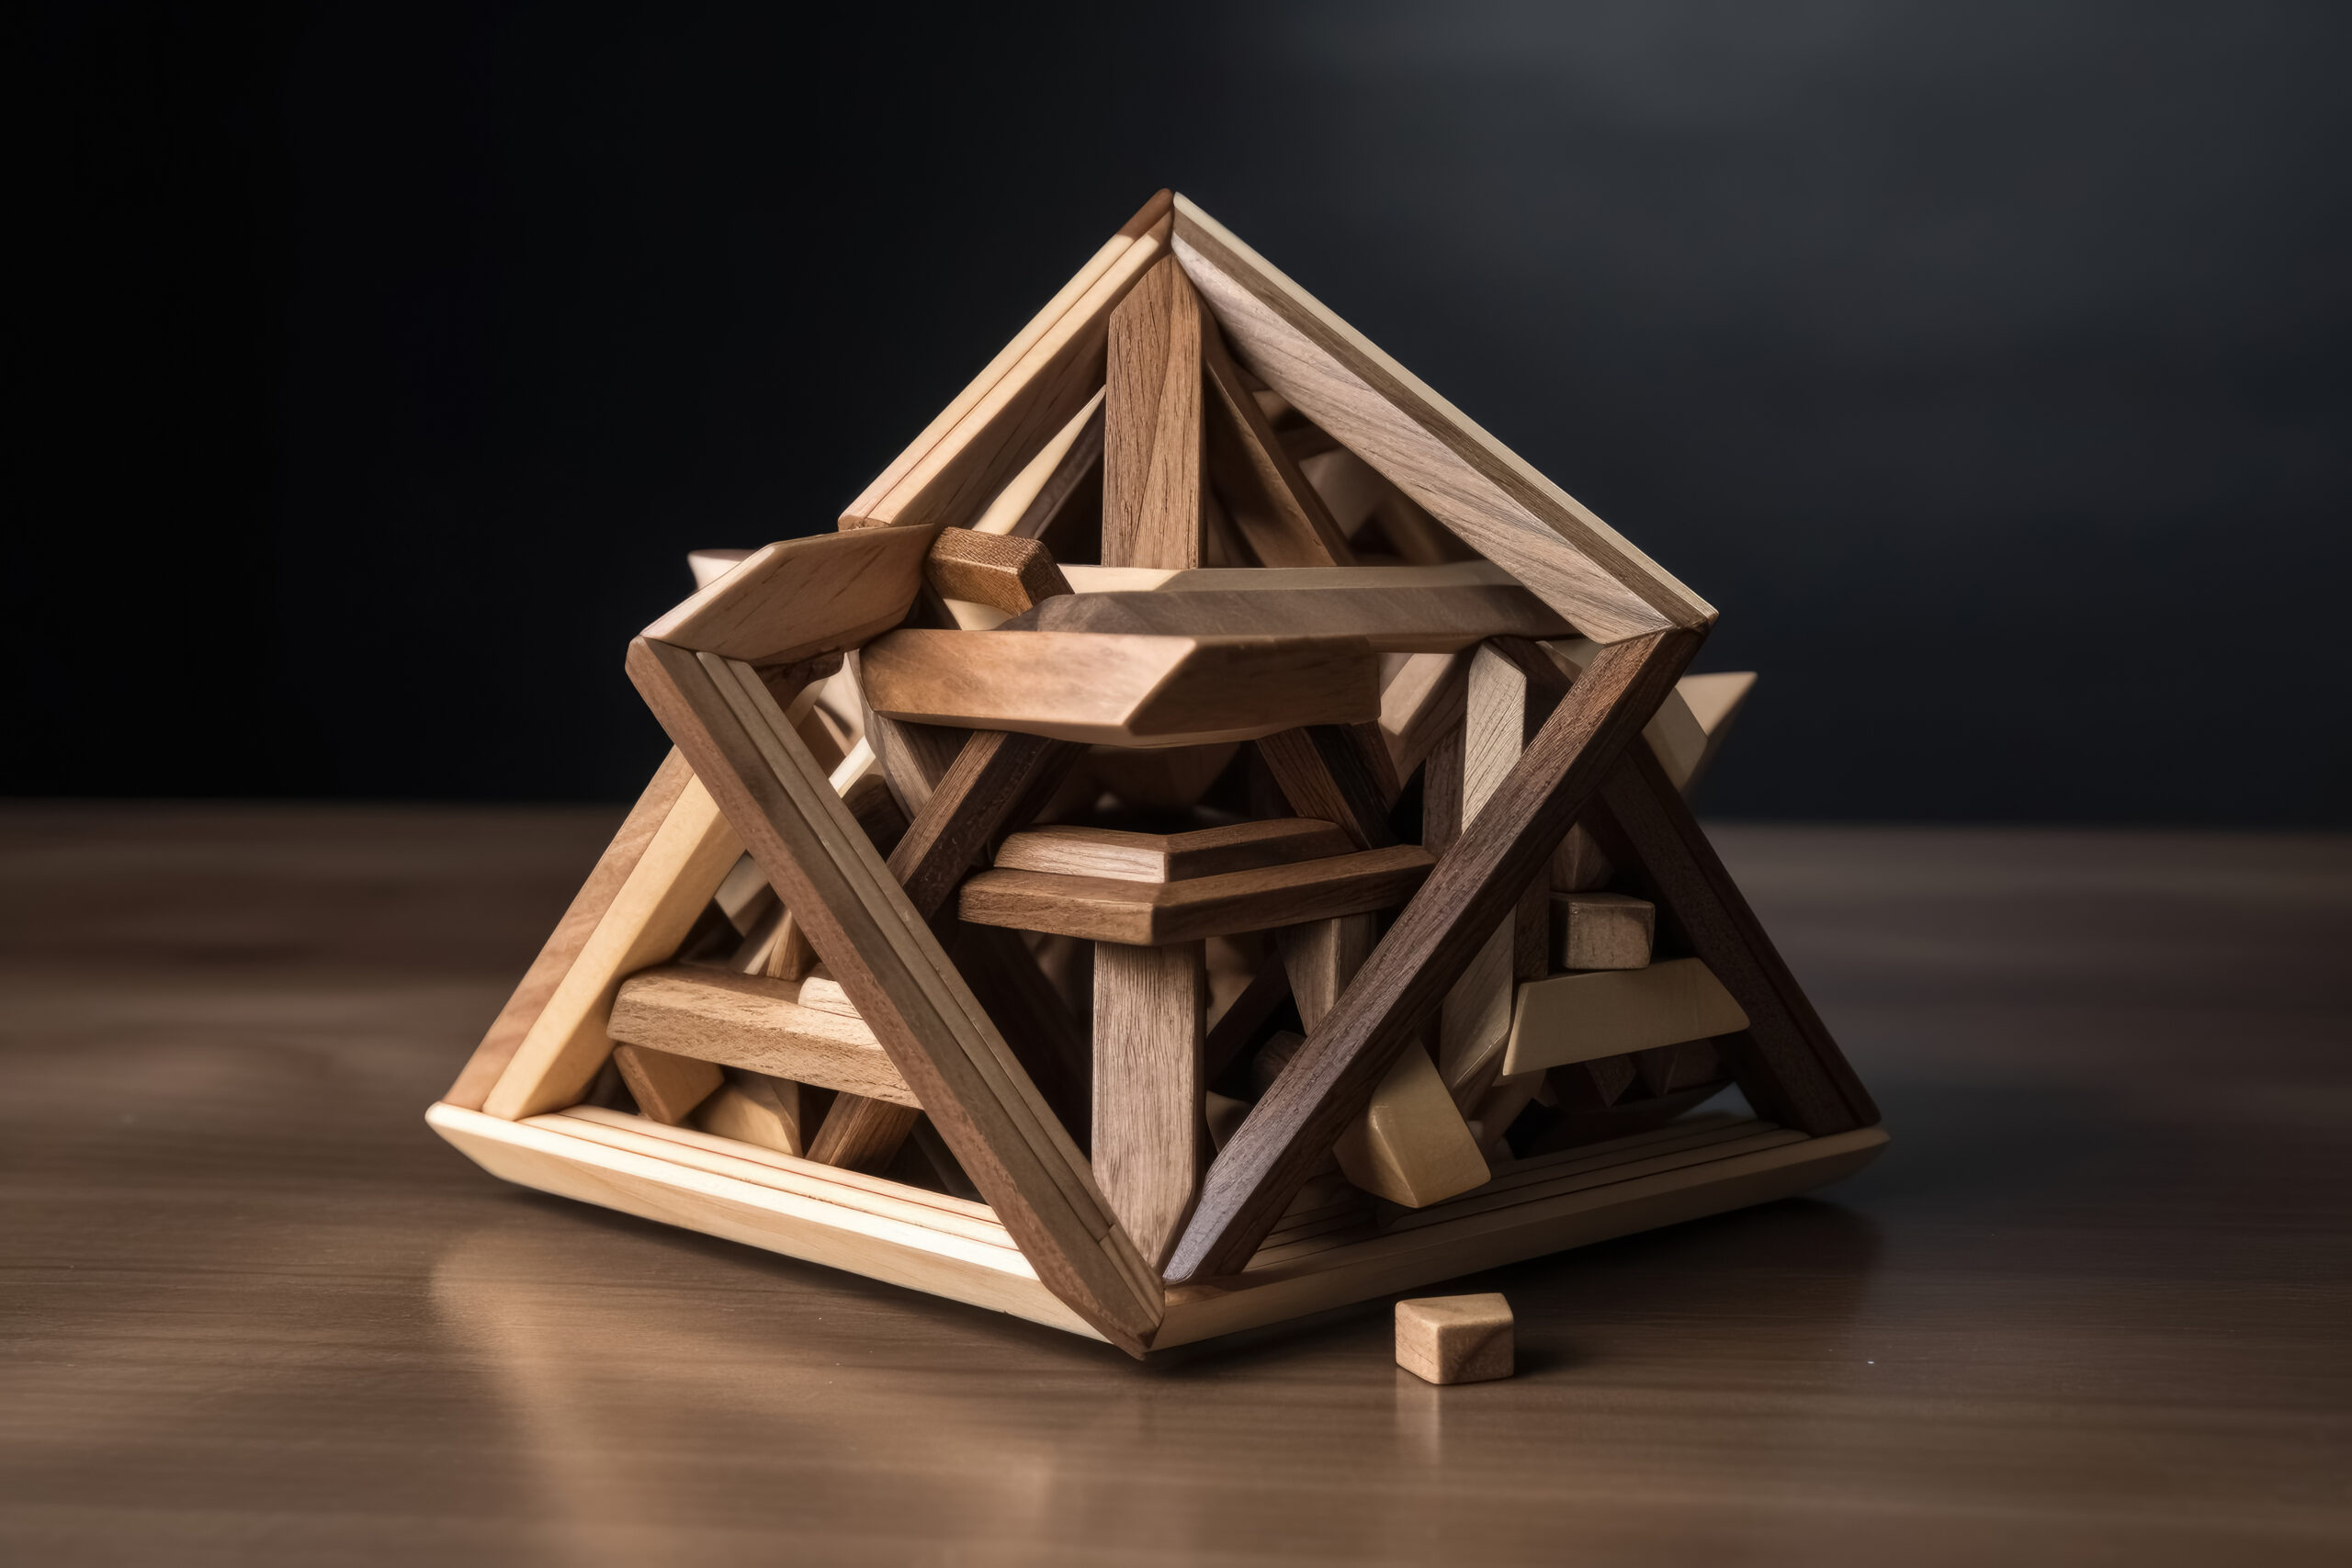 Na zdjęciu widać drewnianą konstrukcję o kształcie równoległoboku. Konstrukcja składa się z czterech boków, z których każde dwa są równoległe i równej długości.